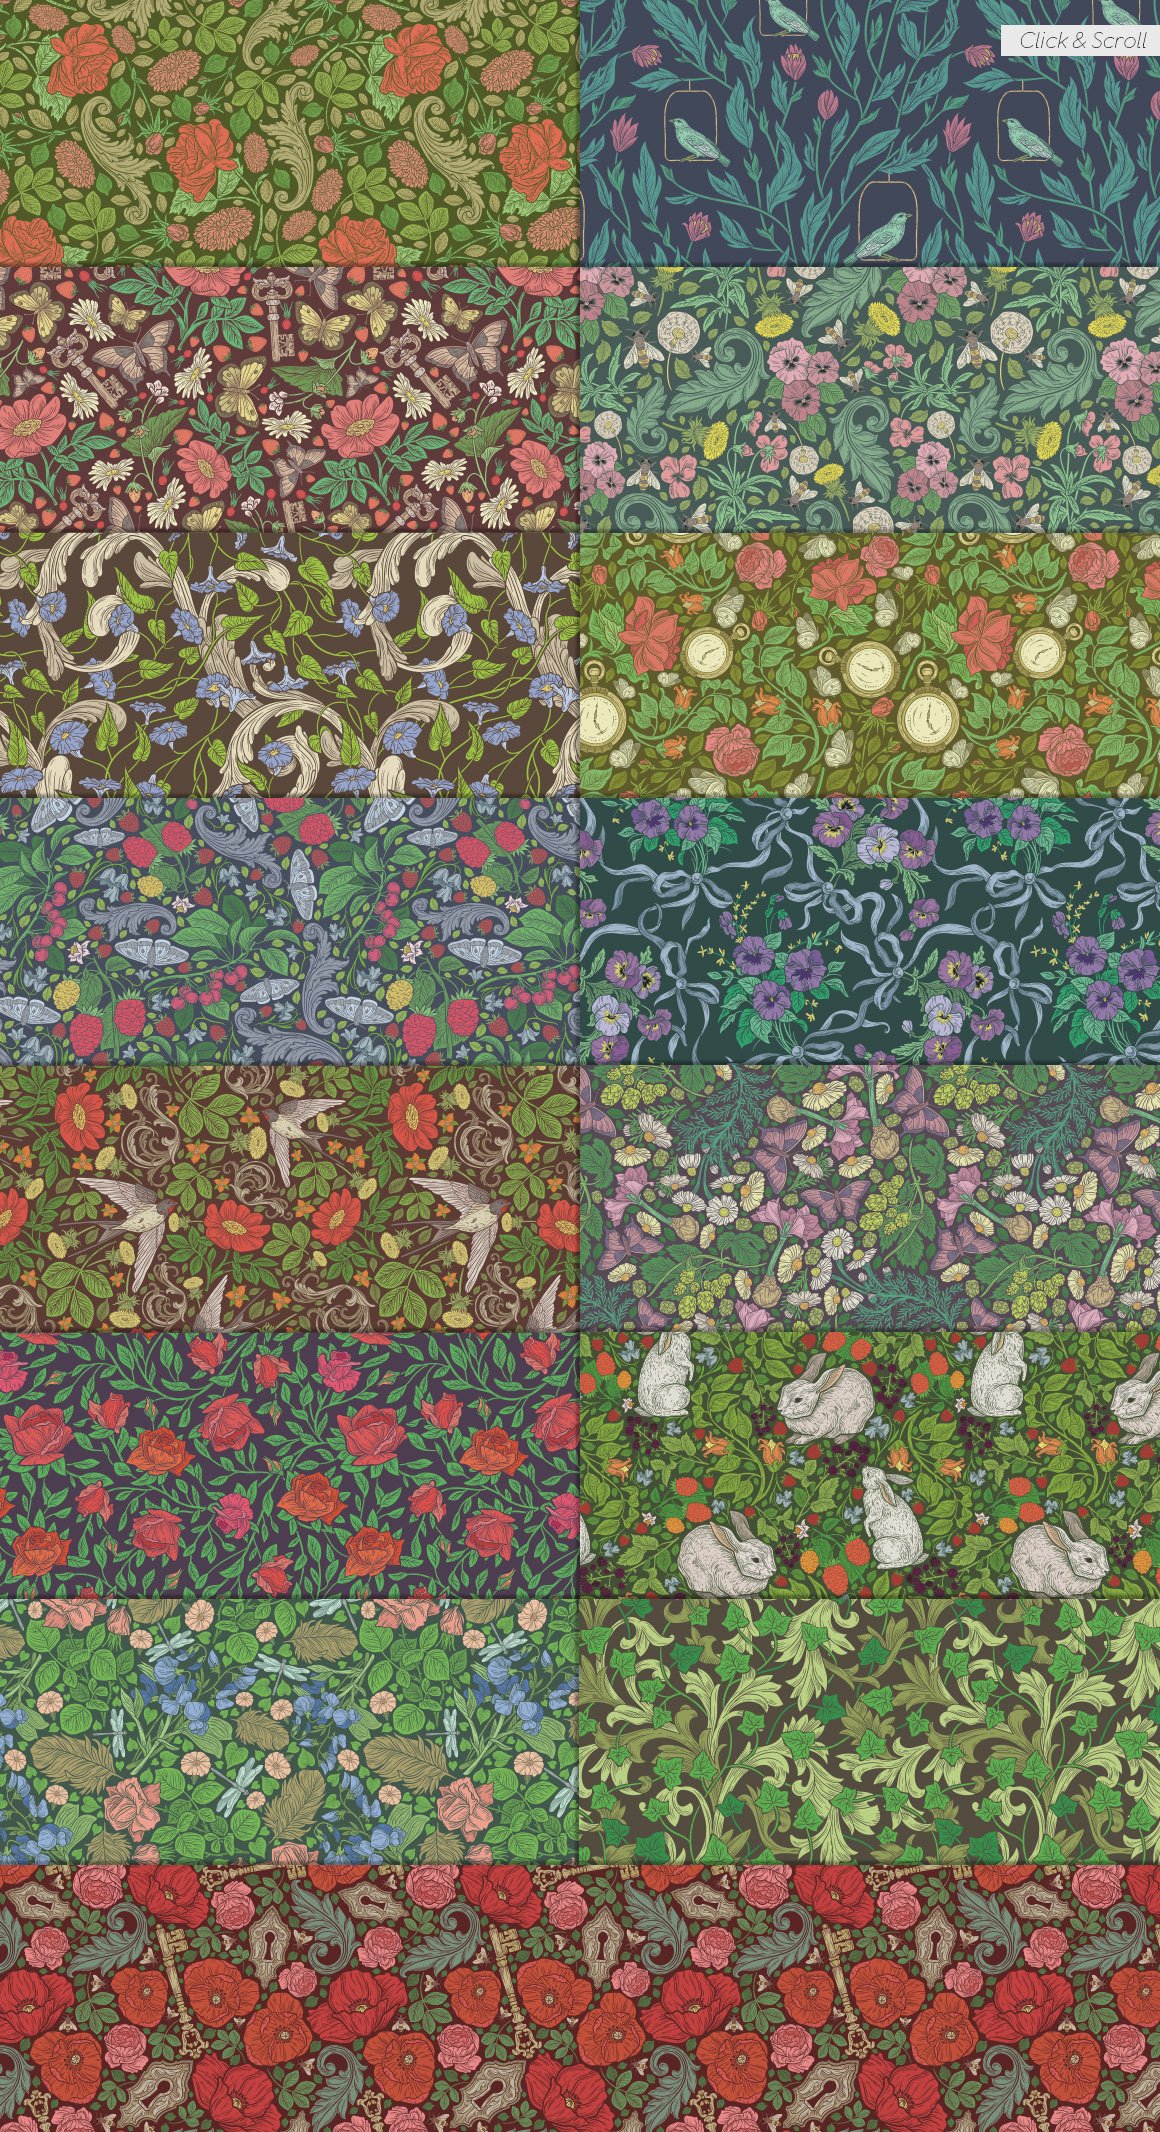 English Backyard Patterns